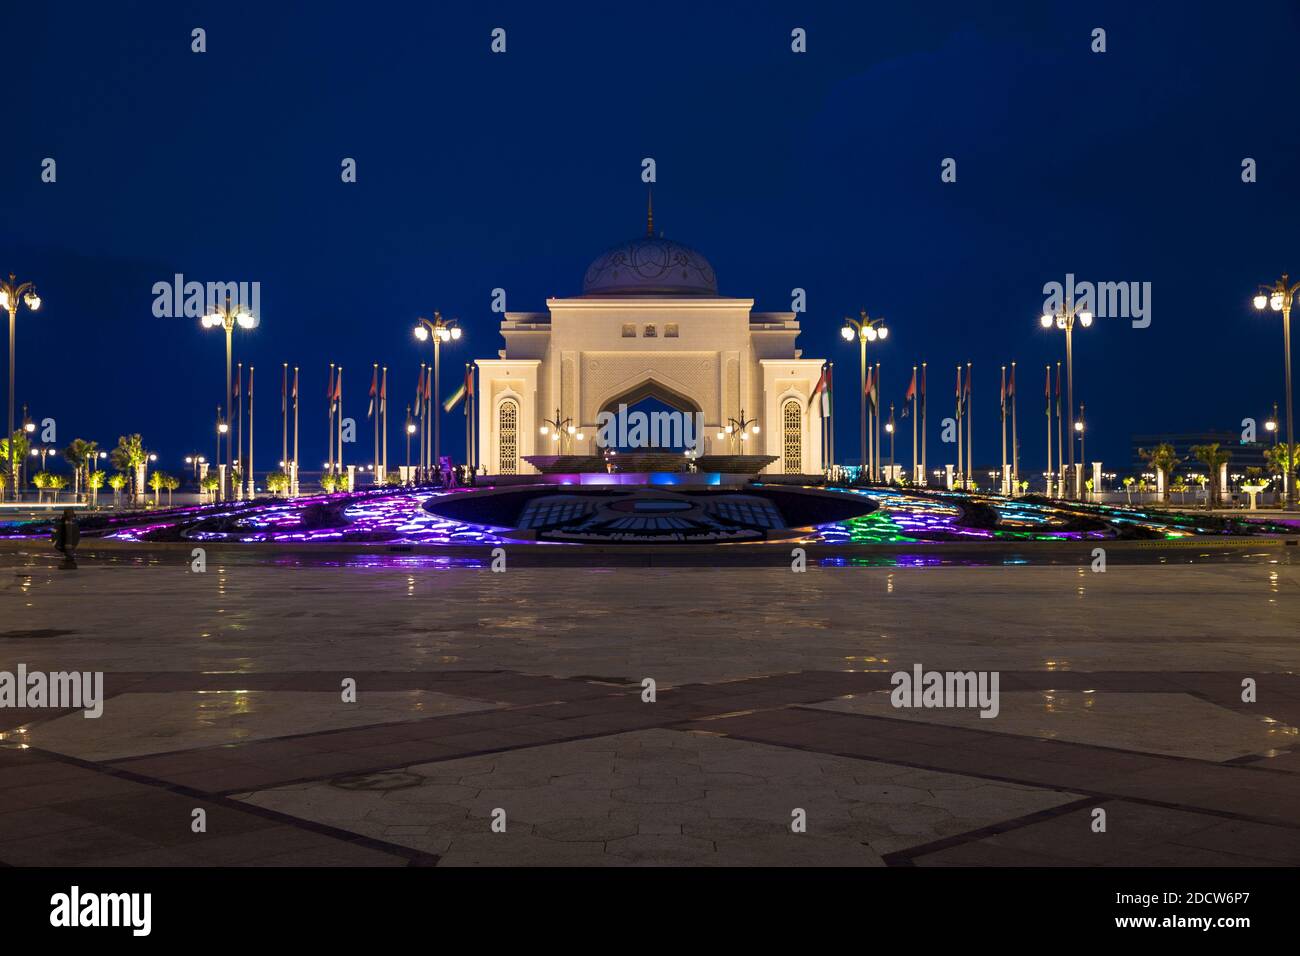 Emirats Arabes Unis, Abu Dhabi, rond-point allumé la nuit Banque D'Images